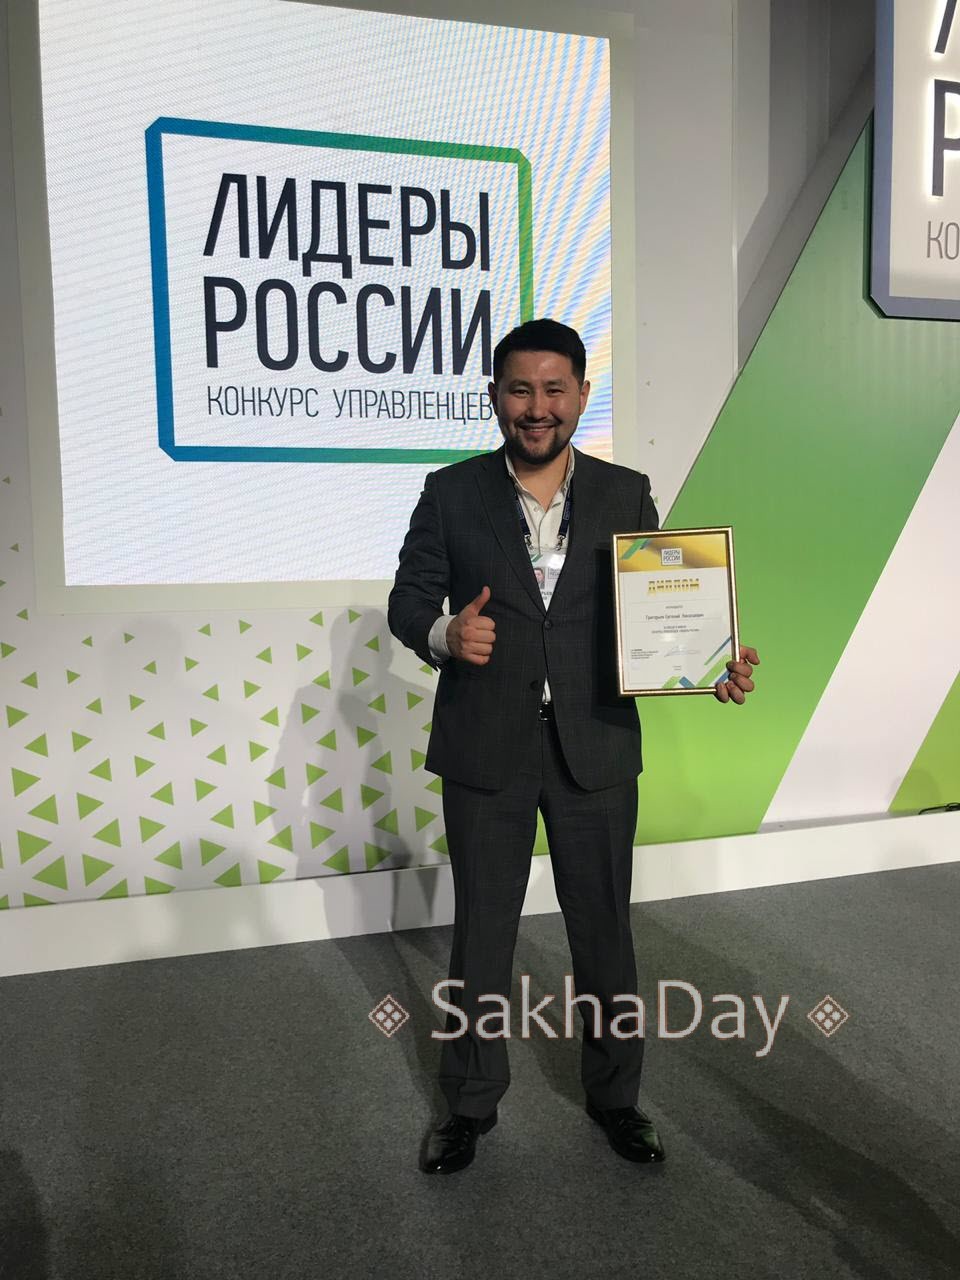 Якутянин стал победителем конкурса управленцев "Лидеры России"